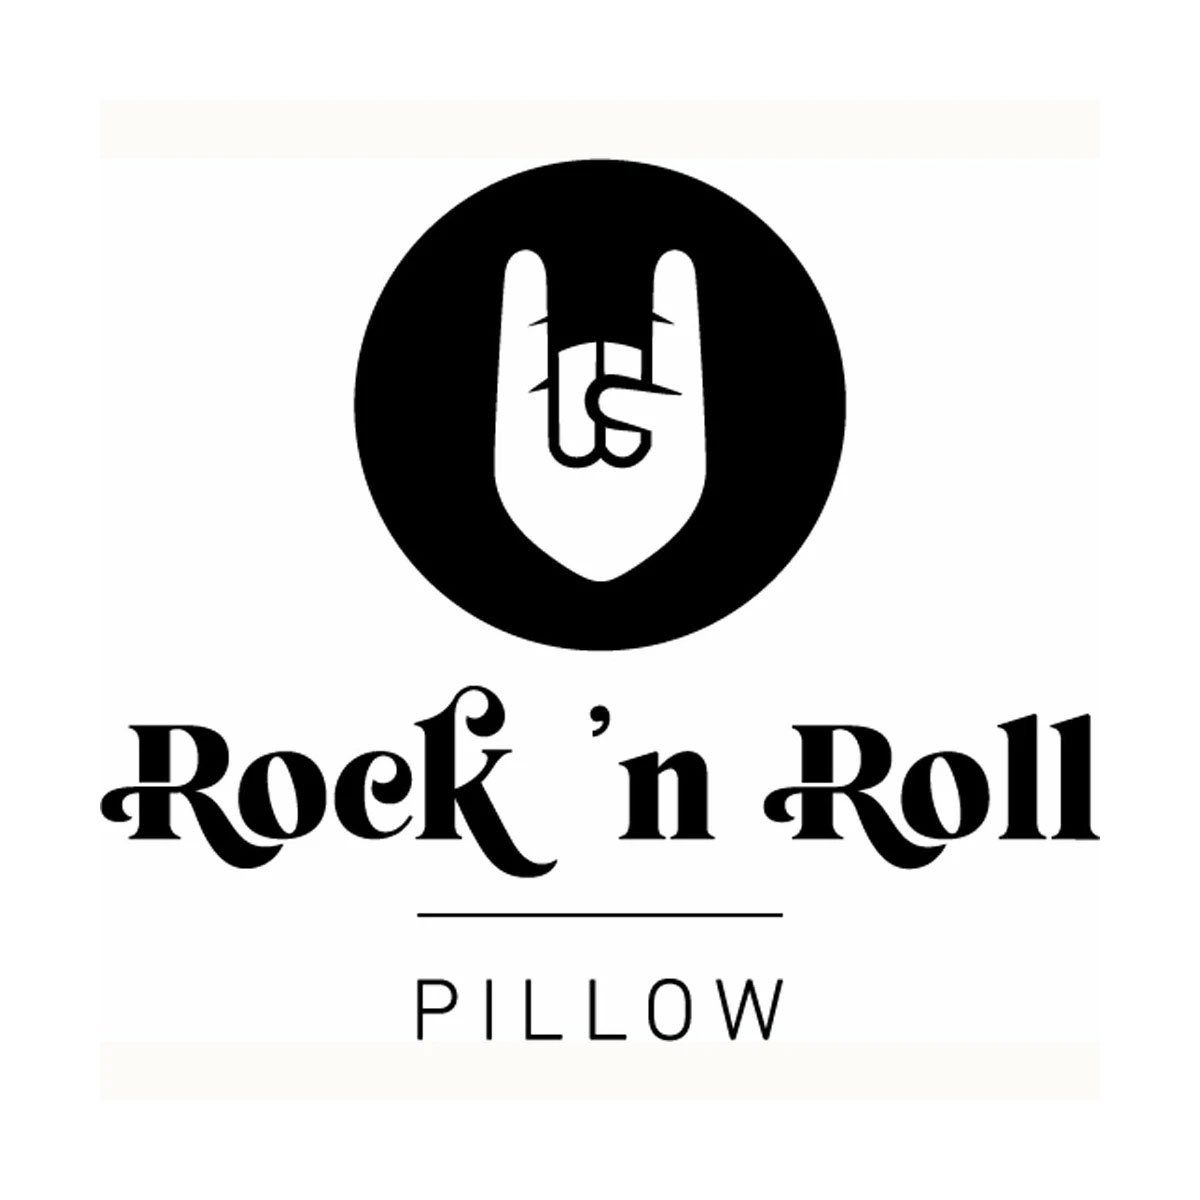 Pillow 30% `n Füllung: Daunen Daunen, Roll 70% Federn, Roll Federn, 30% Schäfer Federkissen Pillow, (mittelfest) Rock `n Rock 70% Kissen